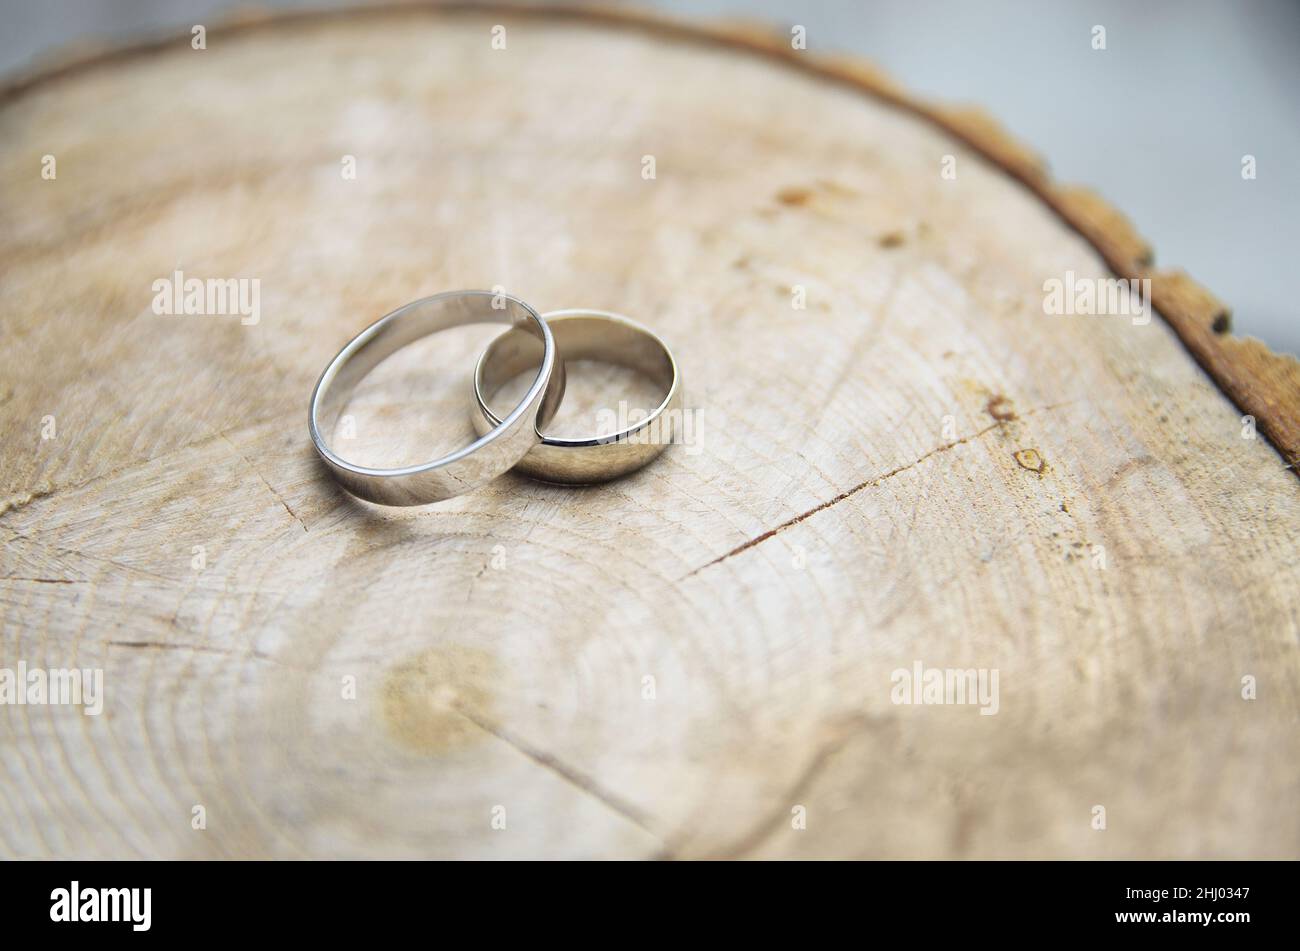 Deux anneaux de mariage en or blanc reposent sur le chauffage naturel du bois.Concept de mariage écologique.Accessoires pour mariée et marié, style boho rustique. Banque D'Images